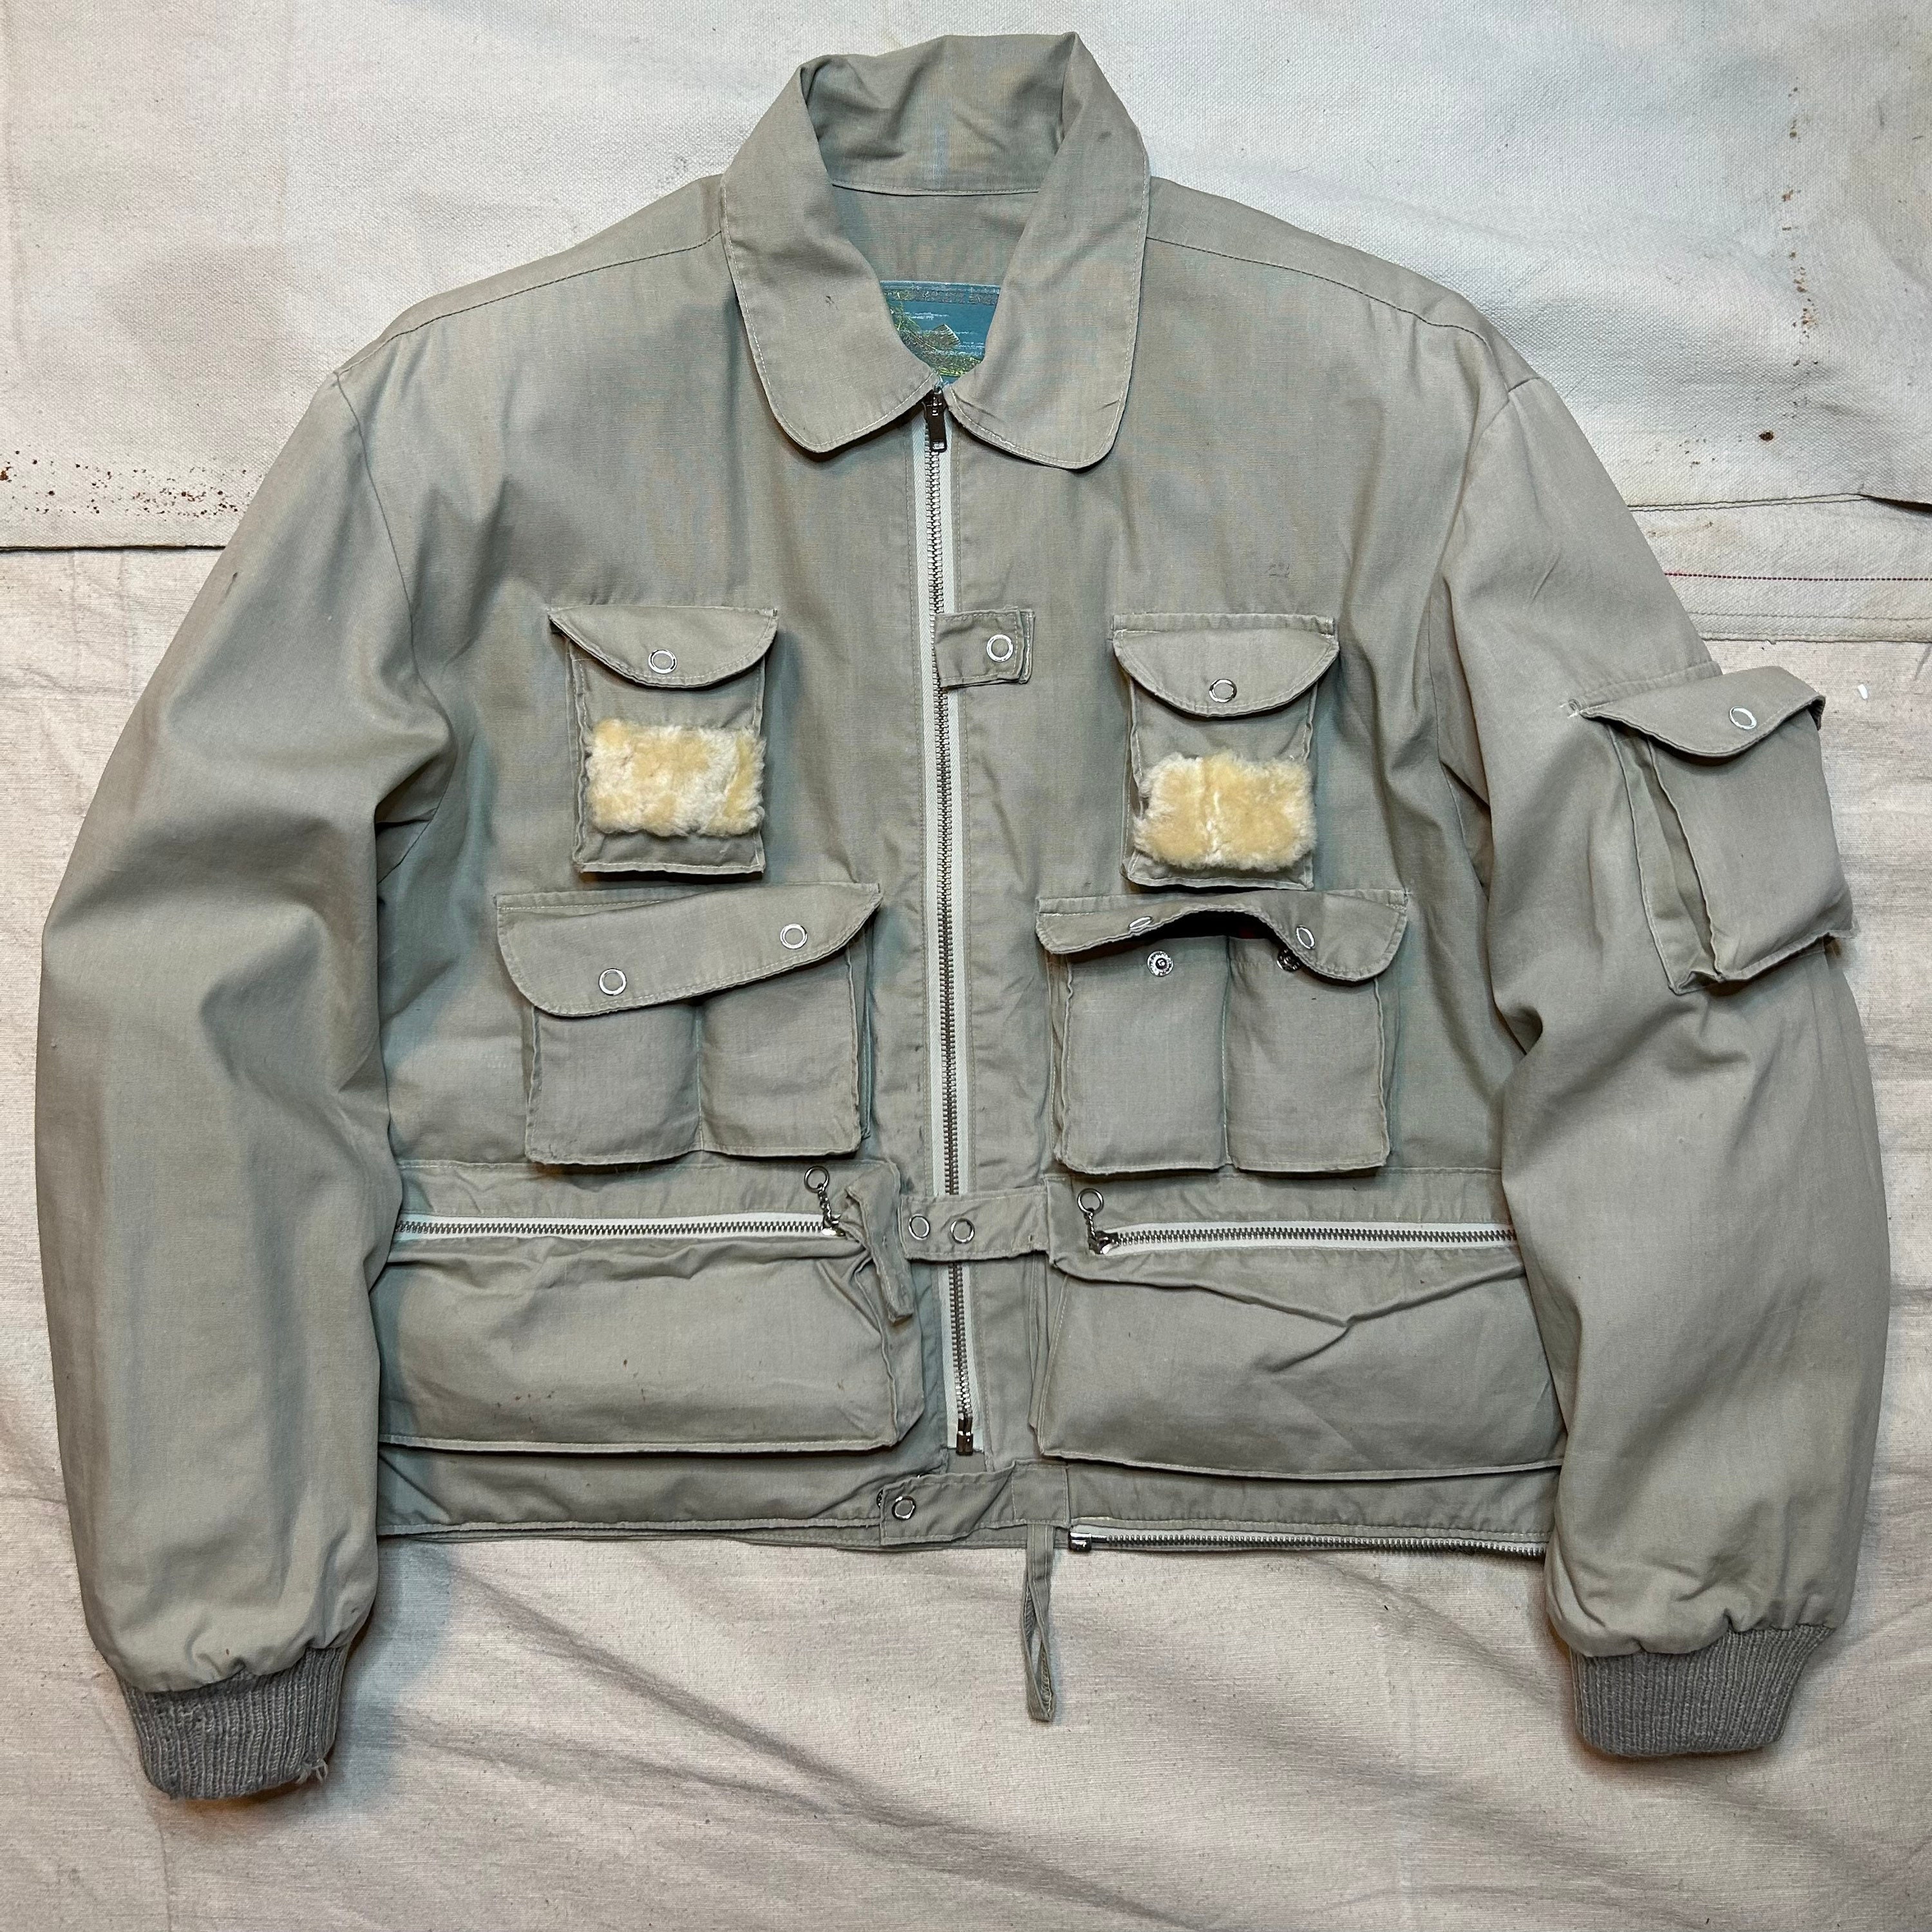 jacketarchives. www.kaidutility.com. Vintage Fishing Jacket.